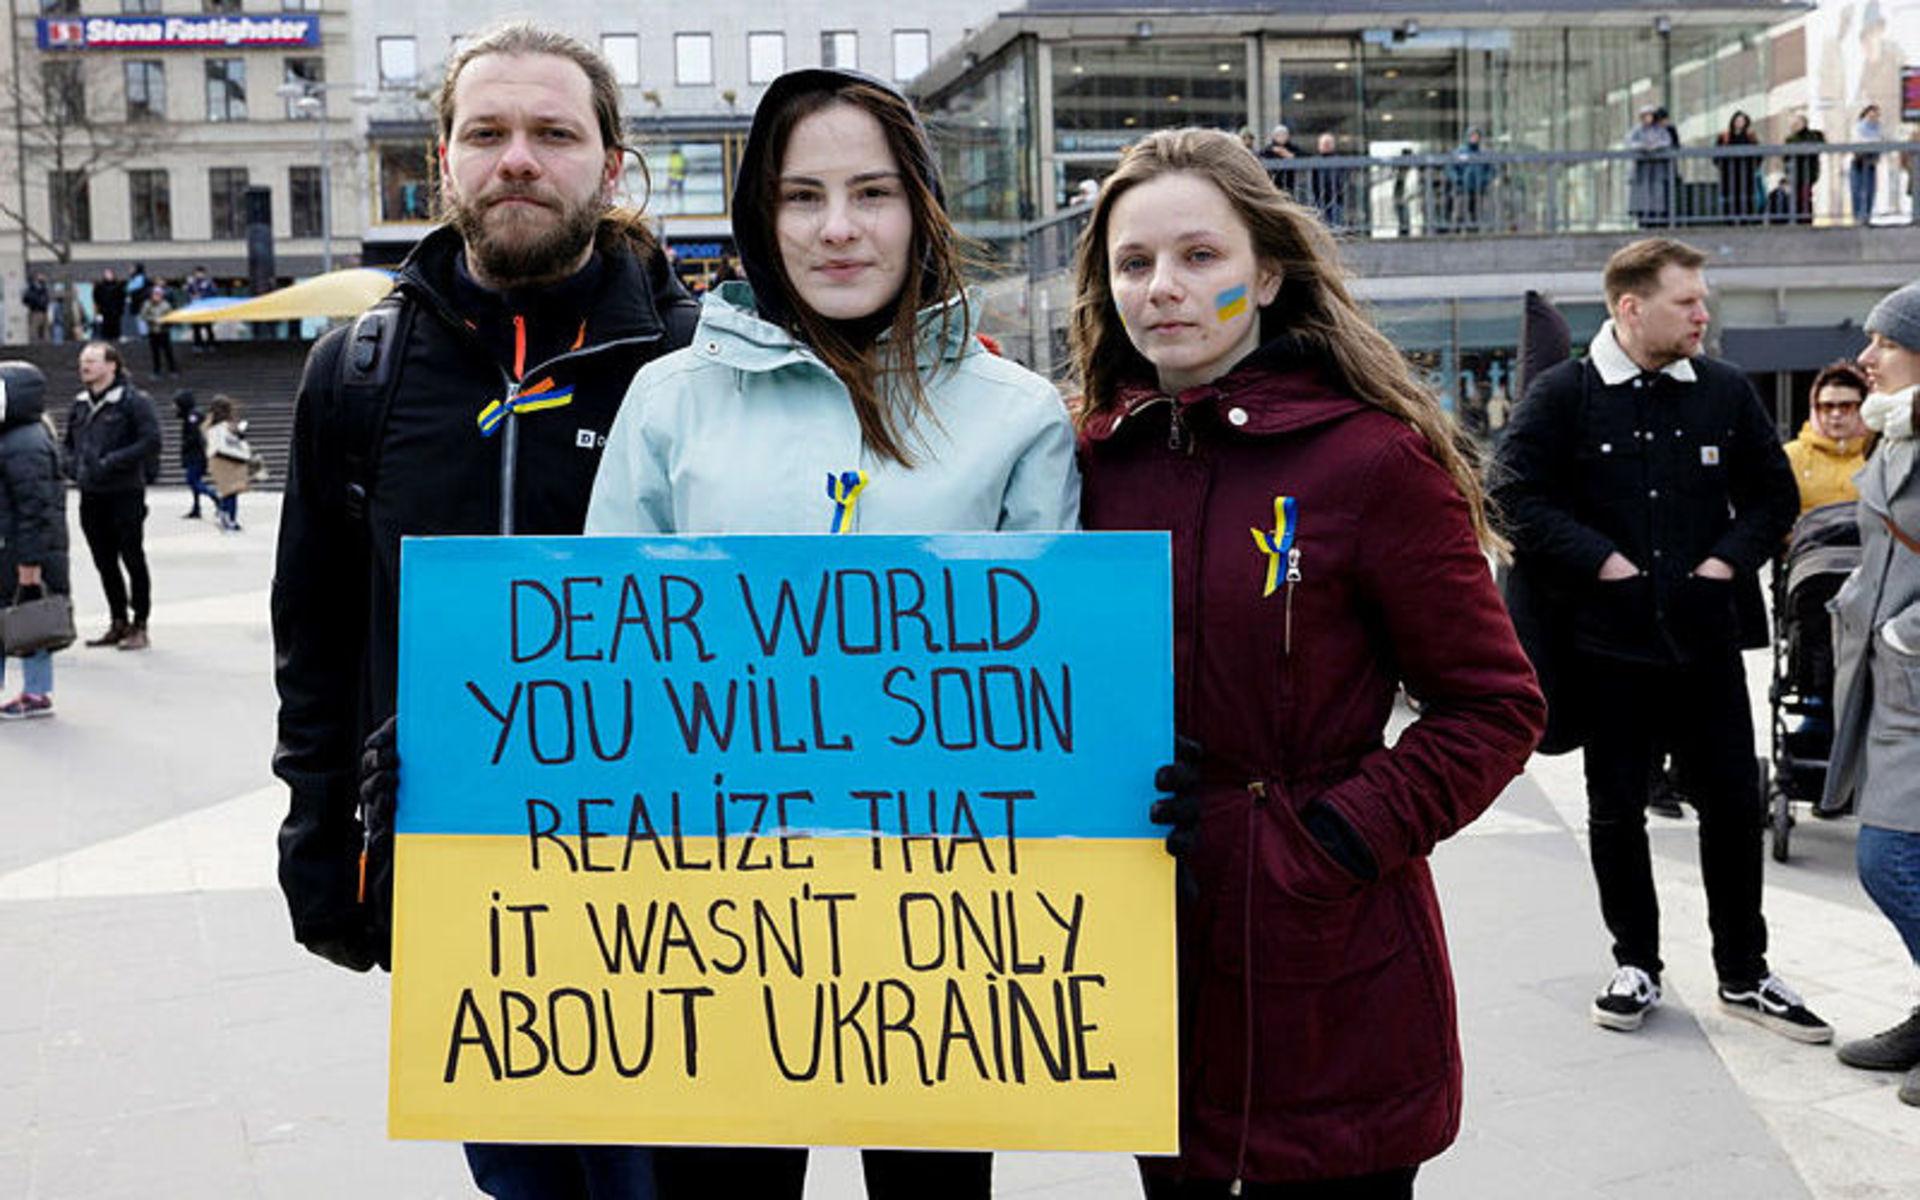 Denys Volkov, Olesia Volkova och Hanna Gromenko var några från Ukraina som var på plats under demonstrationen. ”Mitt liv har förändrats totalt. Jag kan inte åka hem. Hela mitt liv är förstört. Jag skiljts från min familj och det känns hemskt”, säger Hanna.